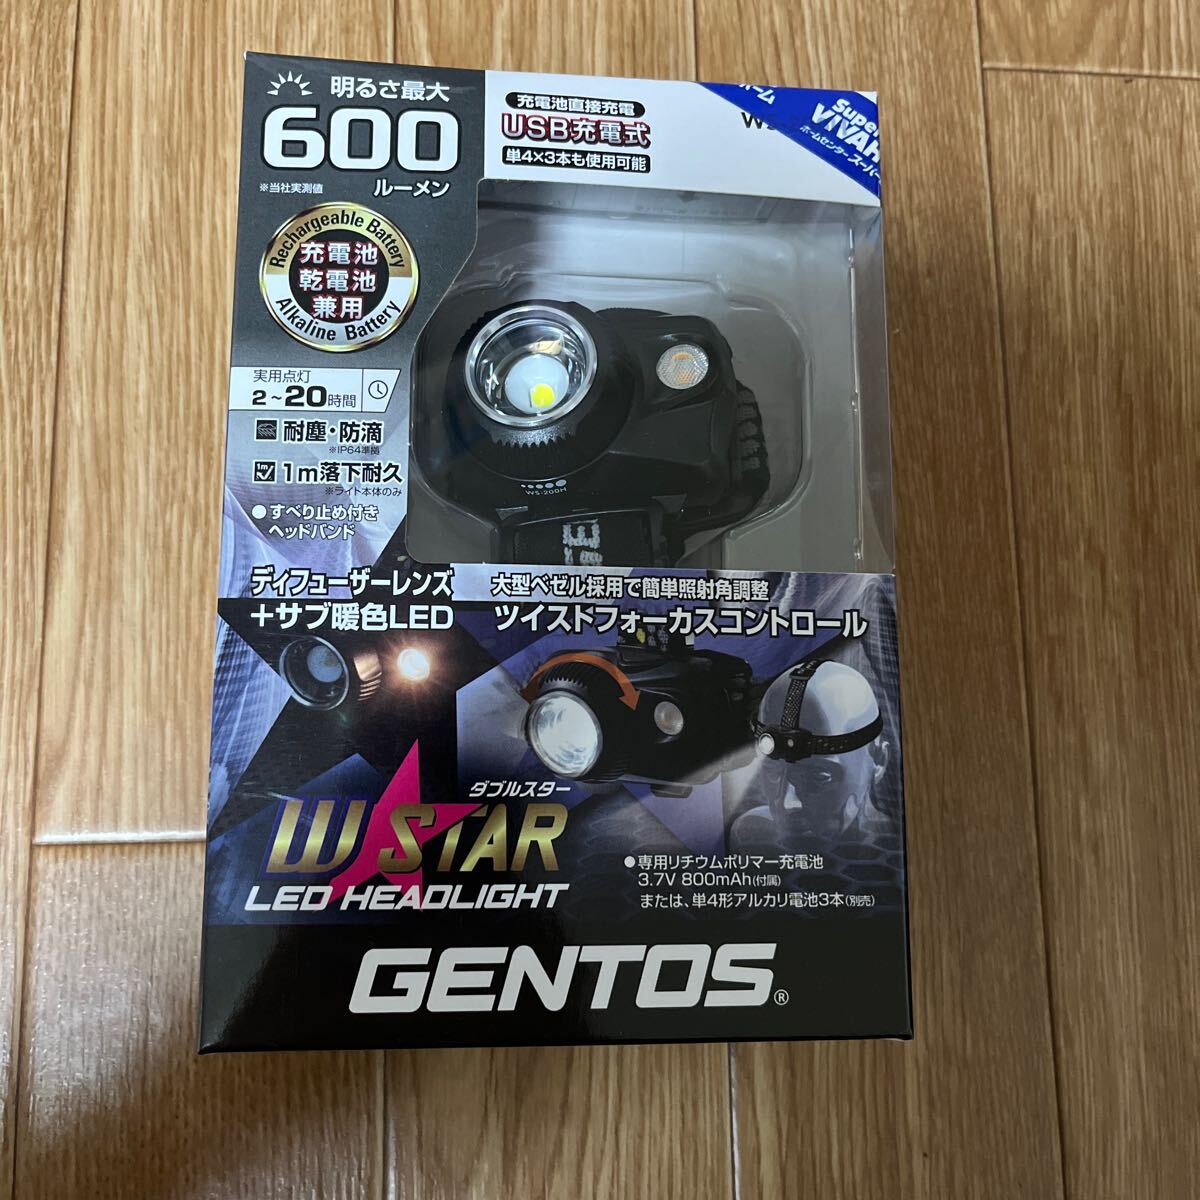 GENTOS ヘッドライト 600ルーメン WS-200H の画像1